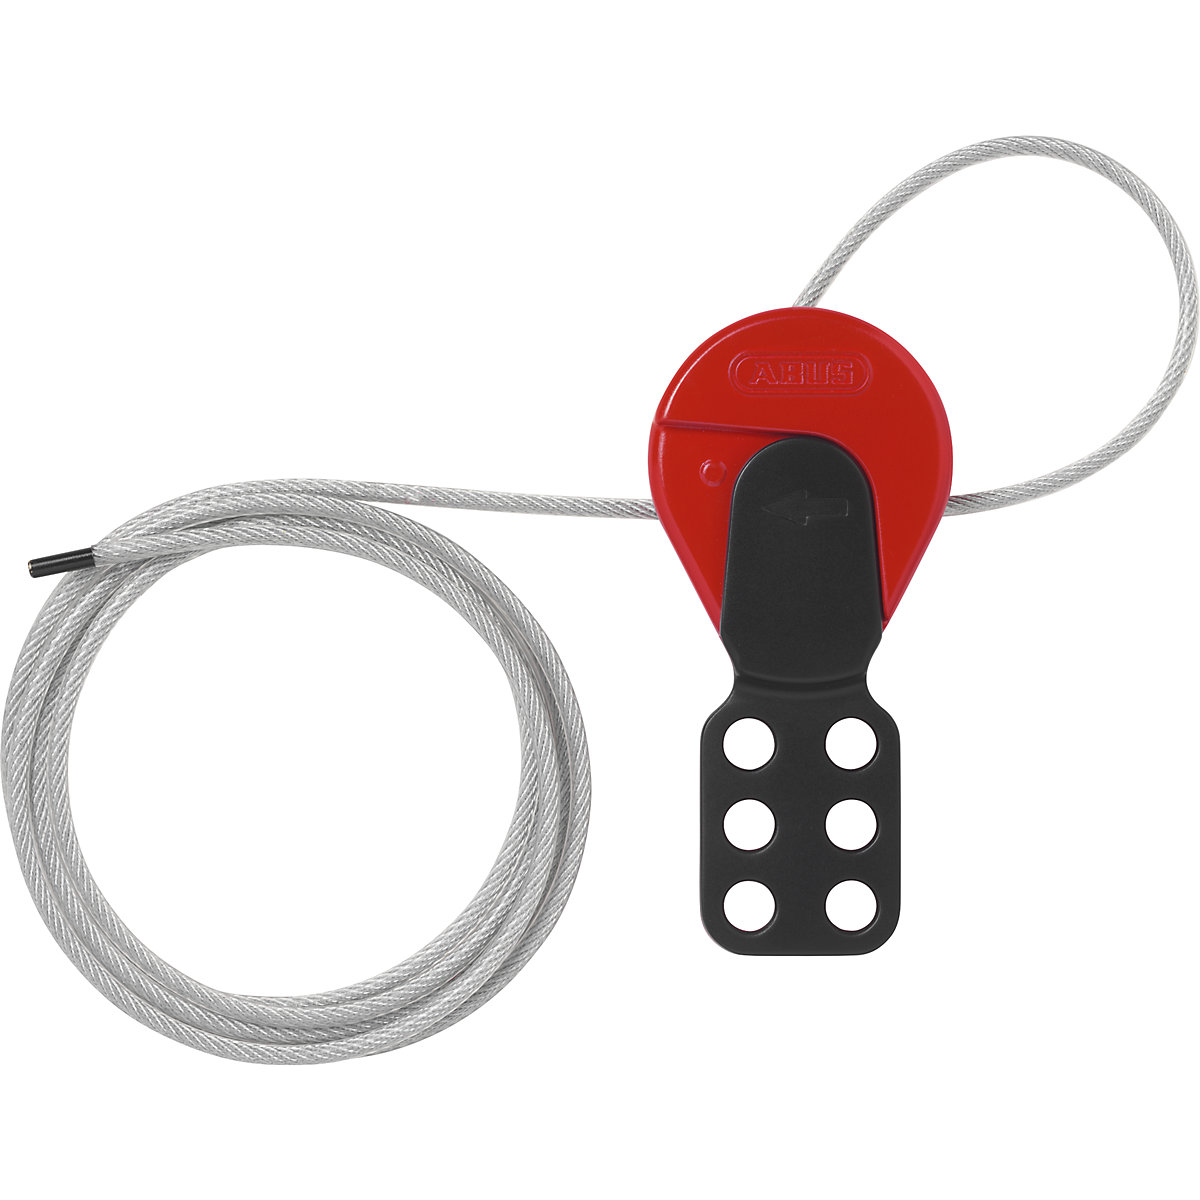 Safelex cable lock – ABUS